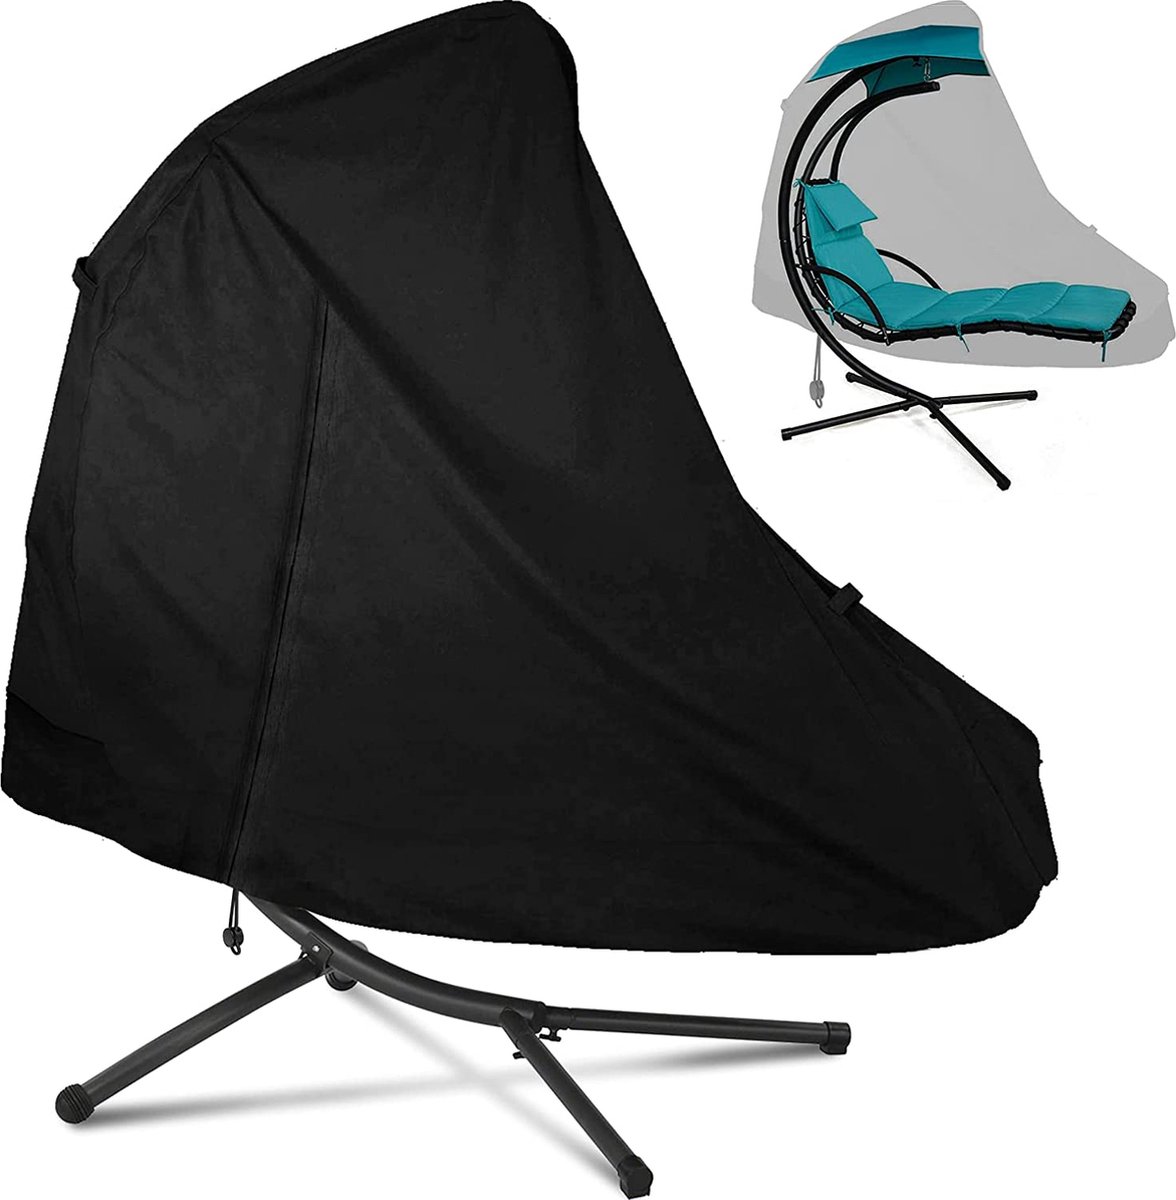 Ophangstoel onderstel met onderlangs, beschermhoes, hangstoel met parasol, onderbouw voor schommelstoel, zonnebed, waterdicht, winddicht, UV-bestendig, 200 x 120 cm